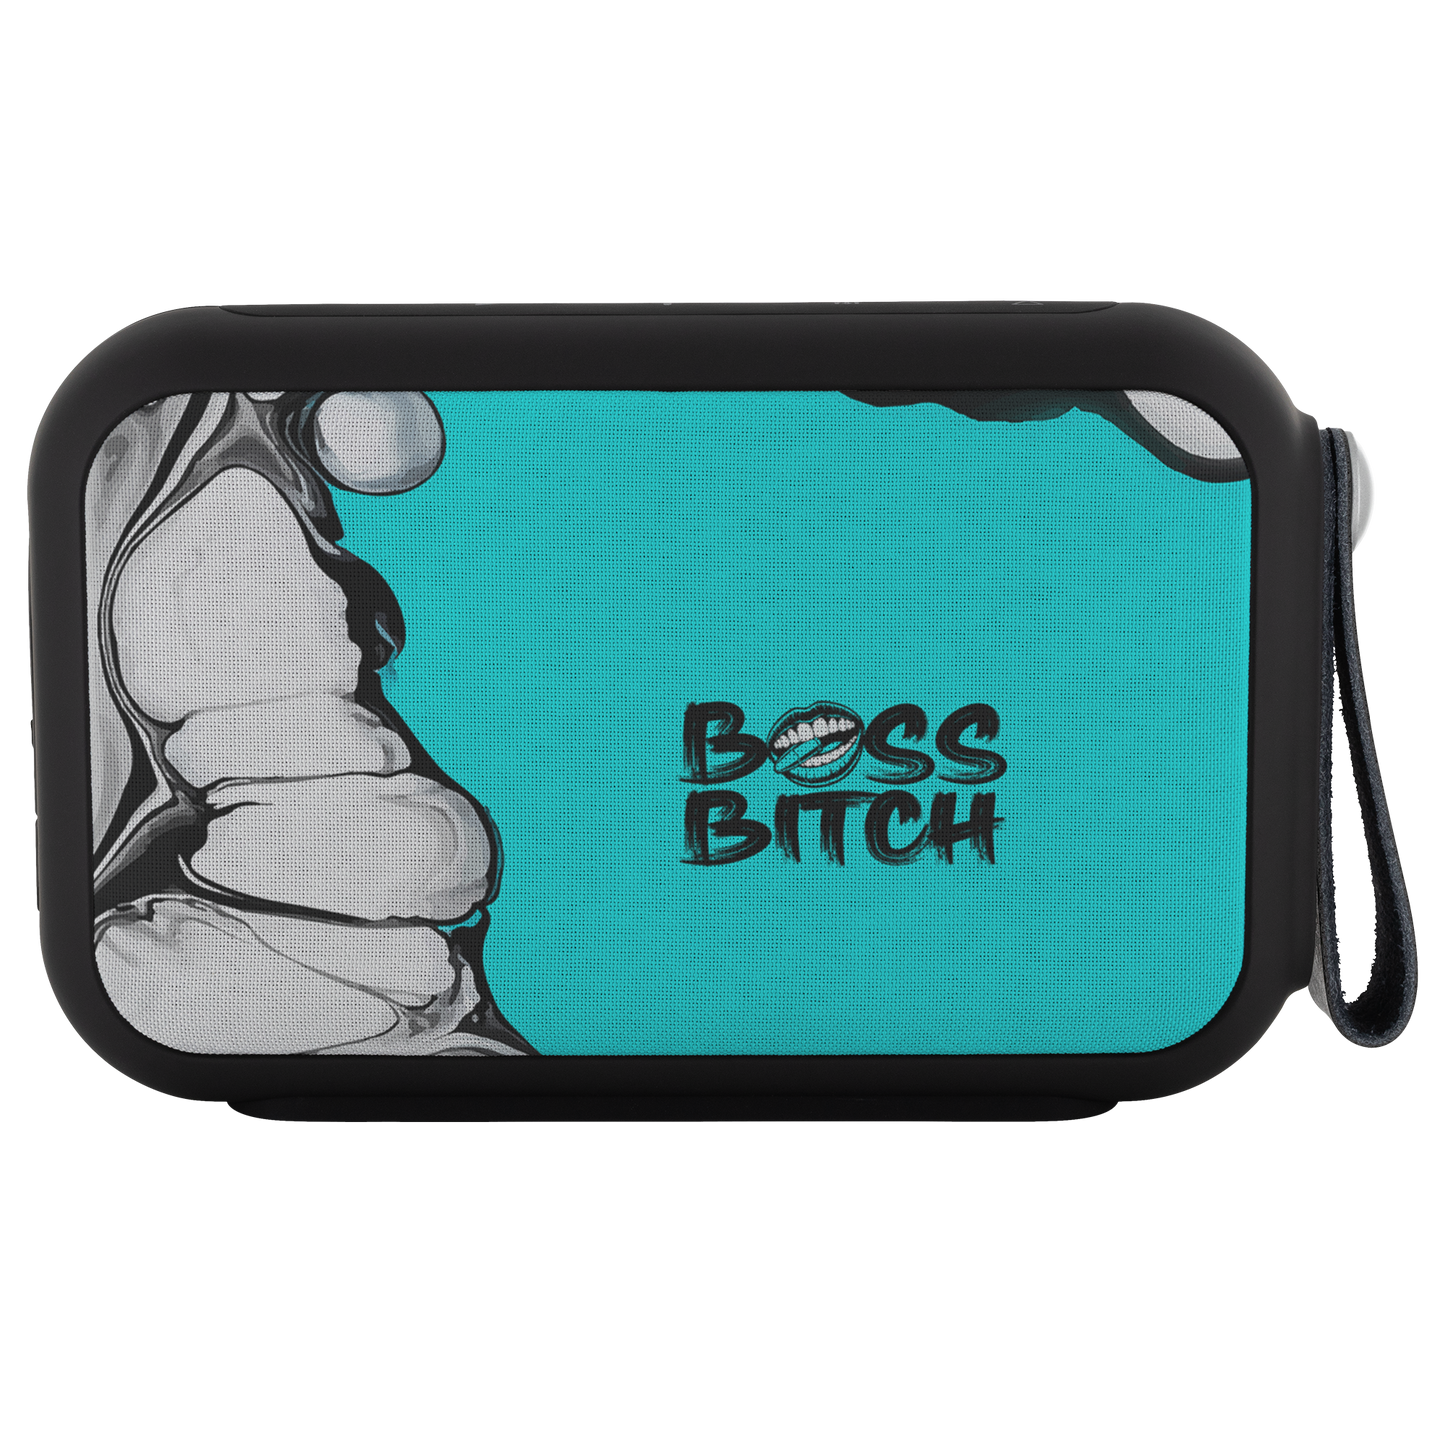 BOSS BITCH BULLET Bluetooth Wireless Speaker